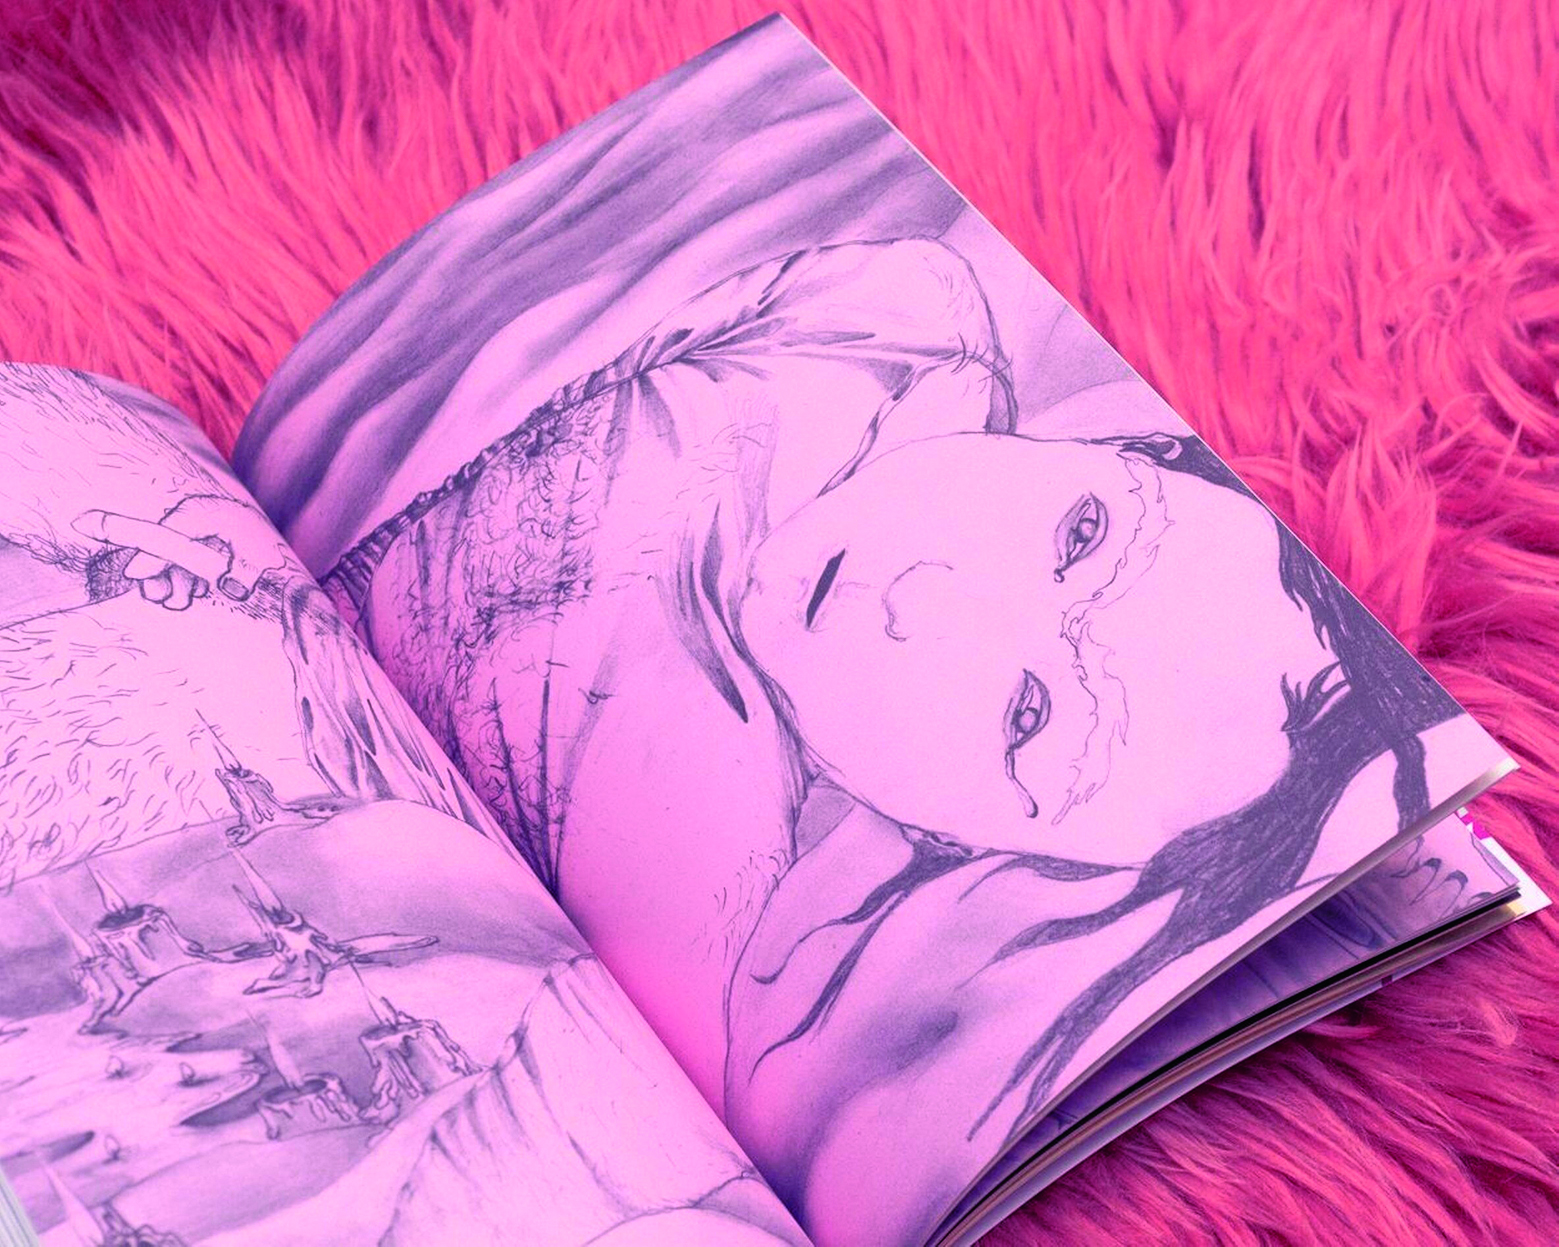   Heiße Themen | Ein Leipziger Magazin für erotische Texte zeigt körperliche Liebe abseits der Norm  